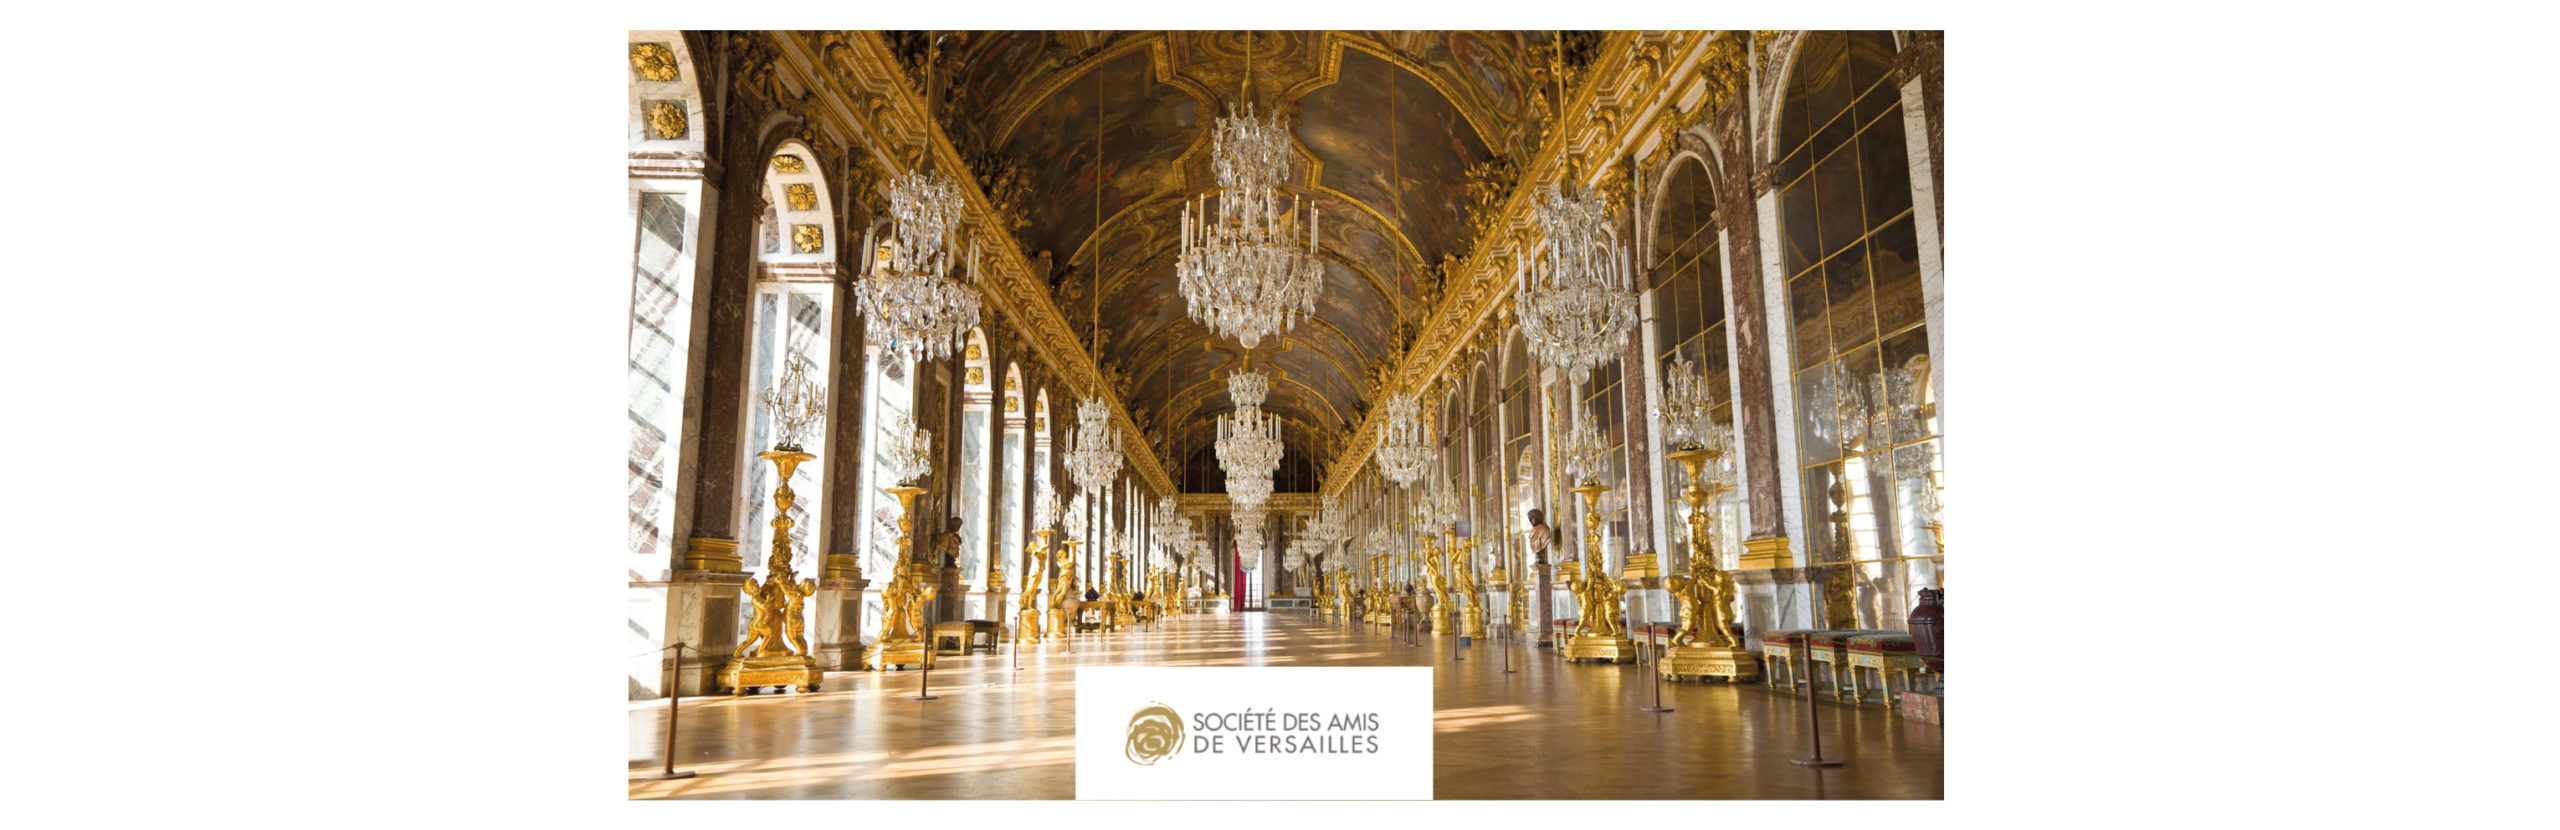 Amis de Versailles